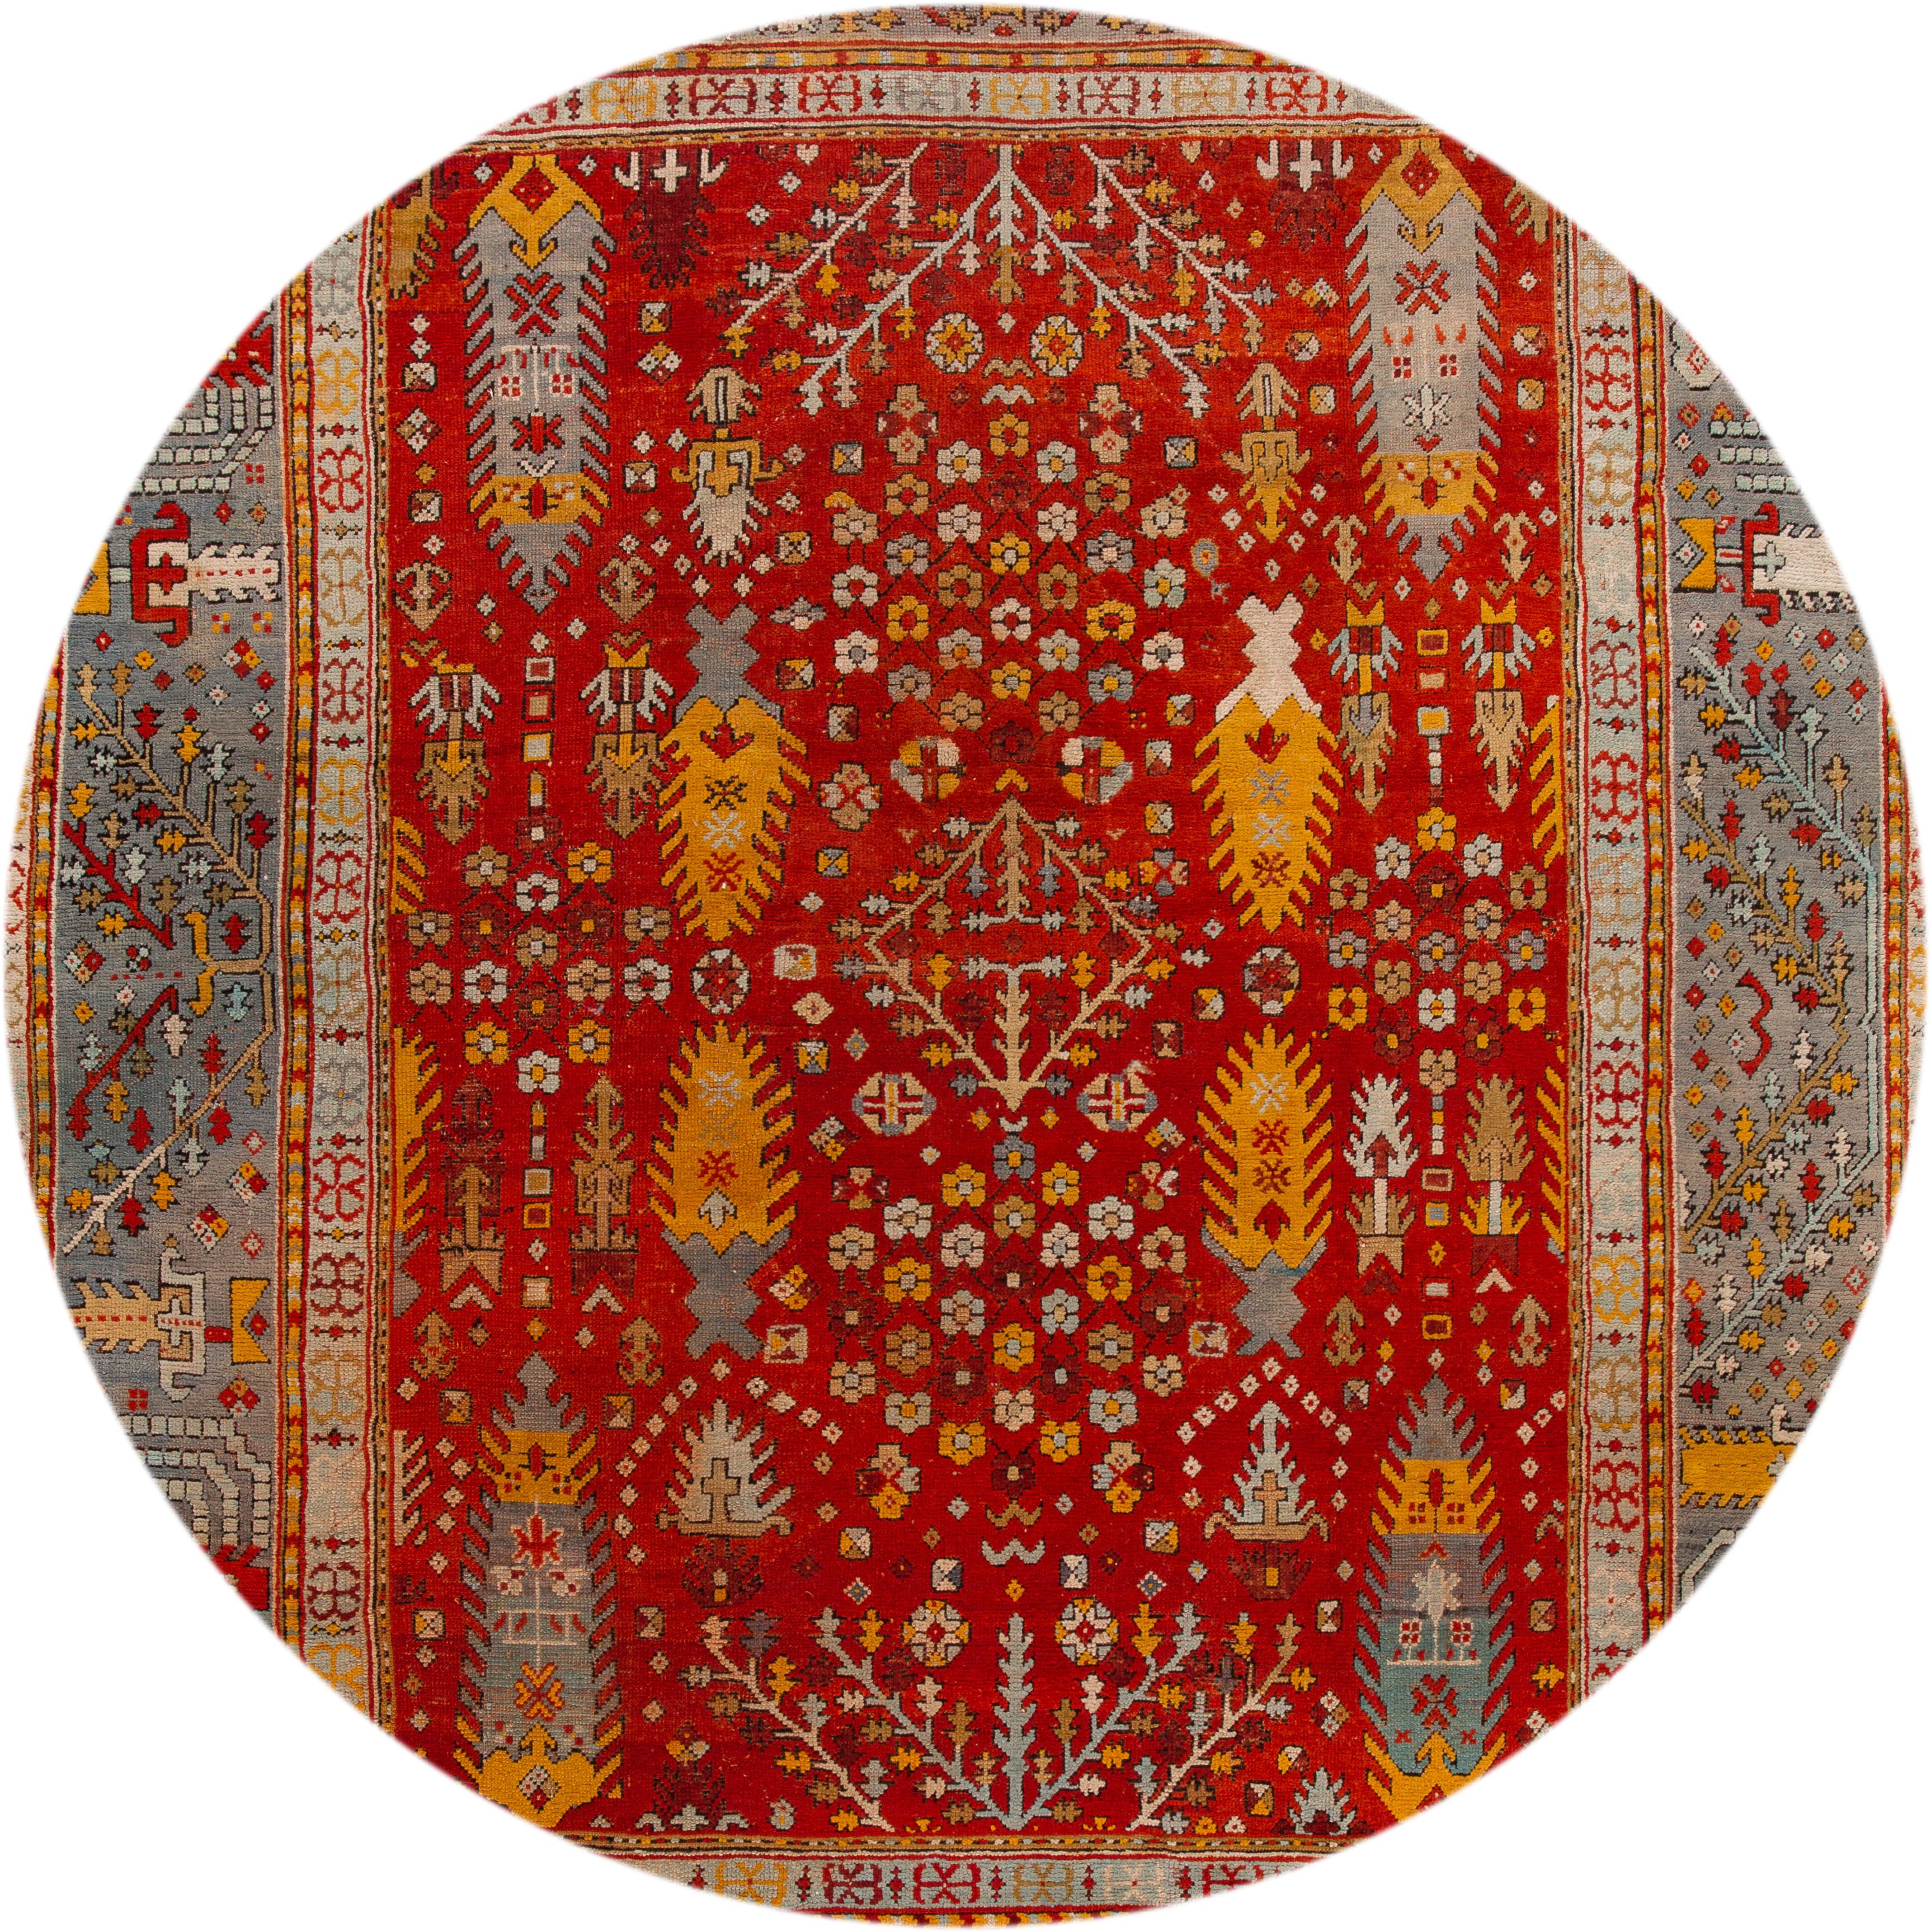 Magnifique tapis turc Oushak ancien, en laine nouée à la main, avec un champ rouge vif, un cadre bleu, des accents bleus et jaunes dans un motif classique sur toute la surface, vers 1890.
Ce tapis mesure 11' 6